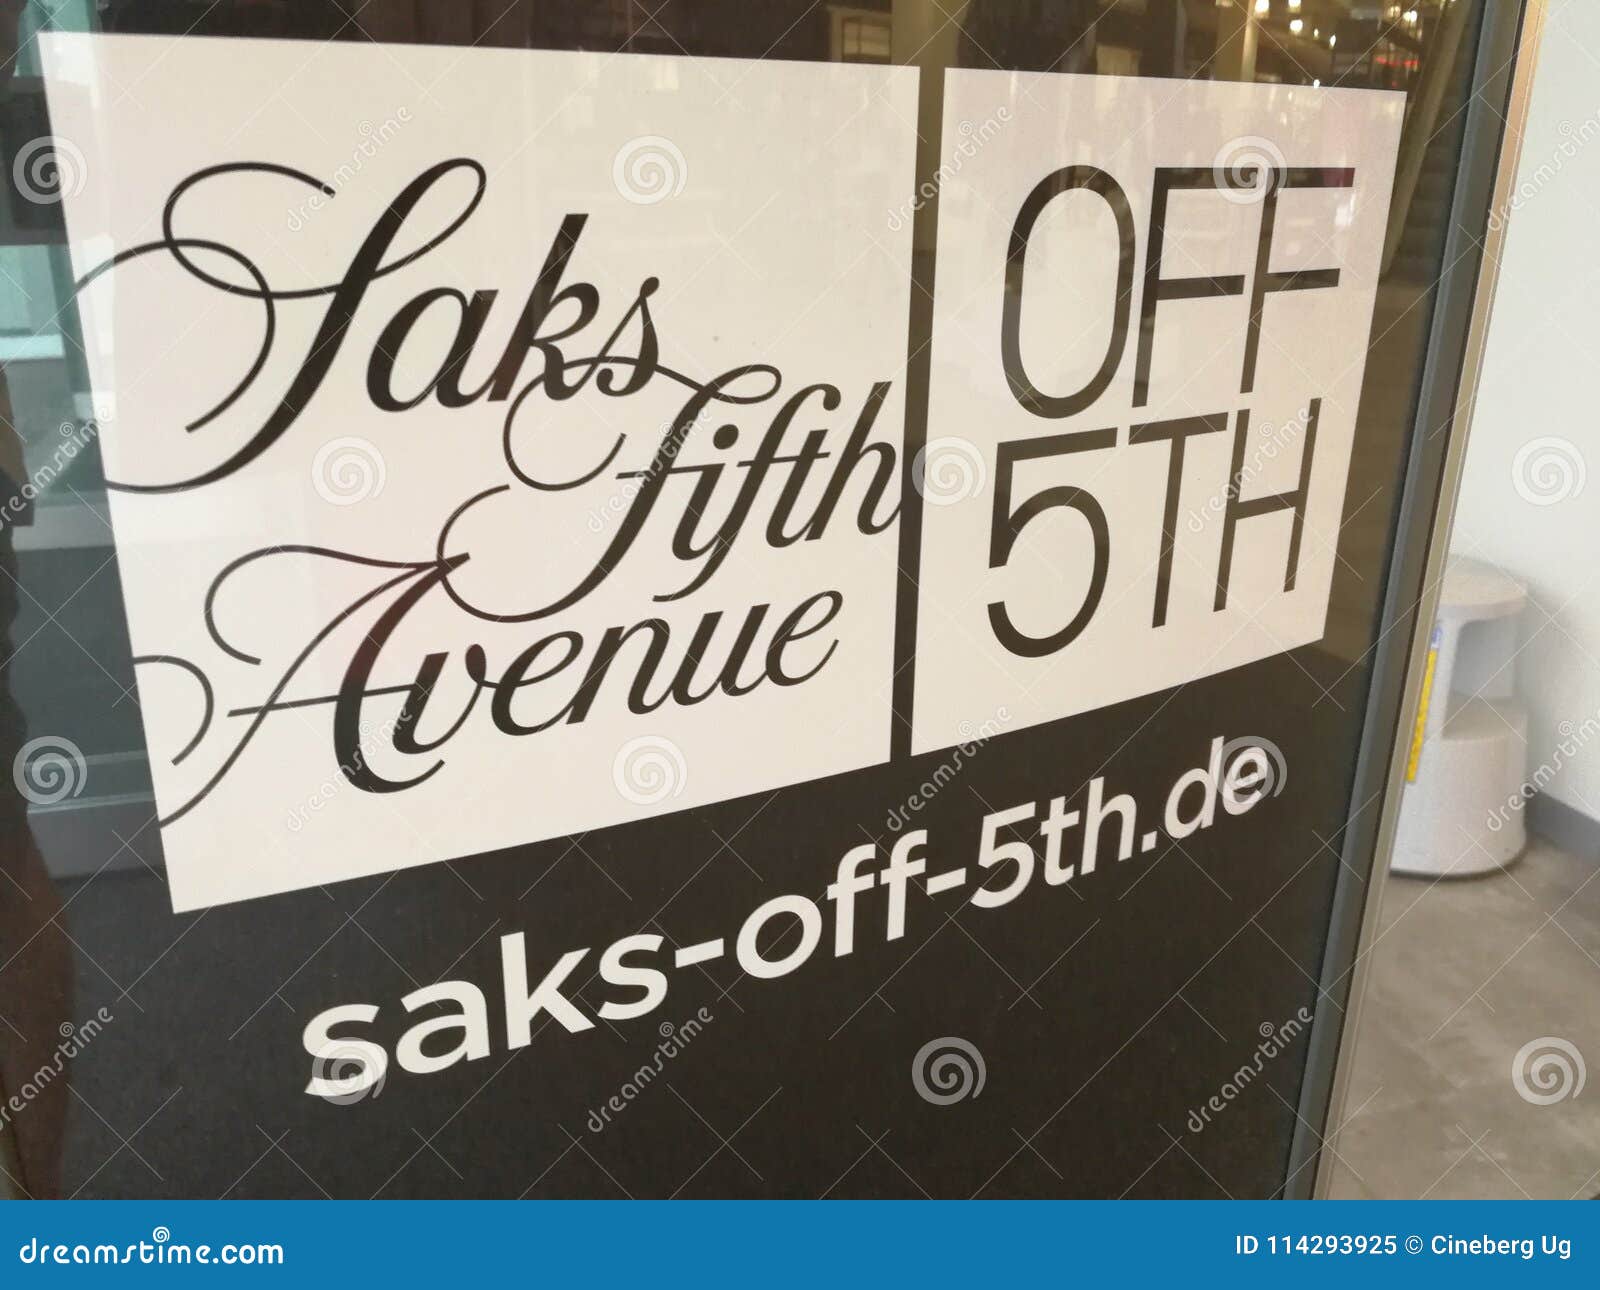 Saks Fifth Avenue Off 5th - Miami, FL